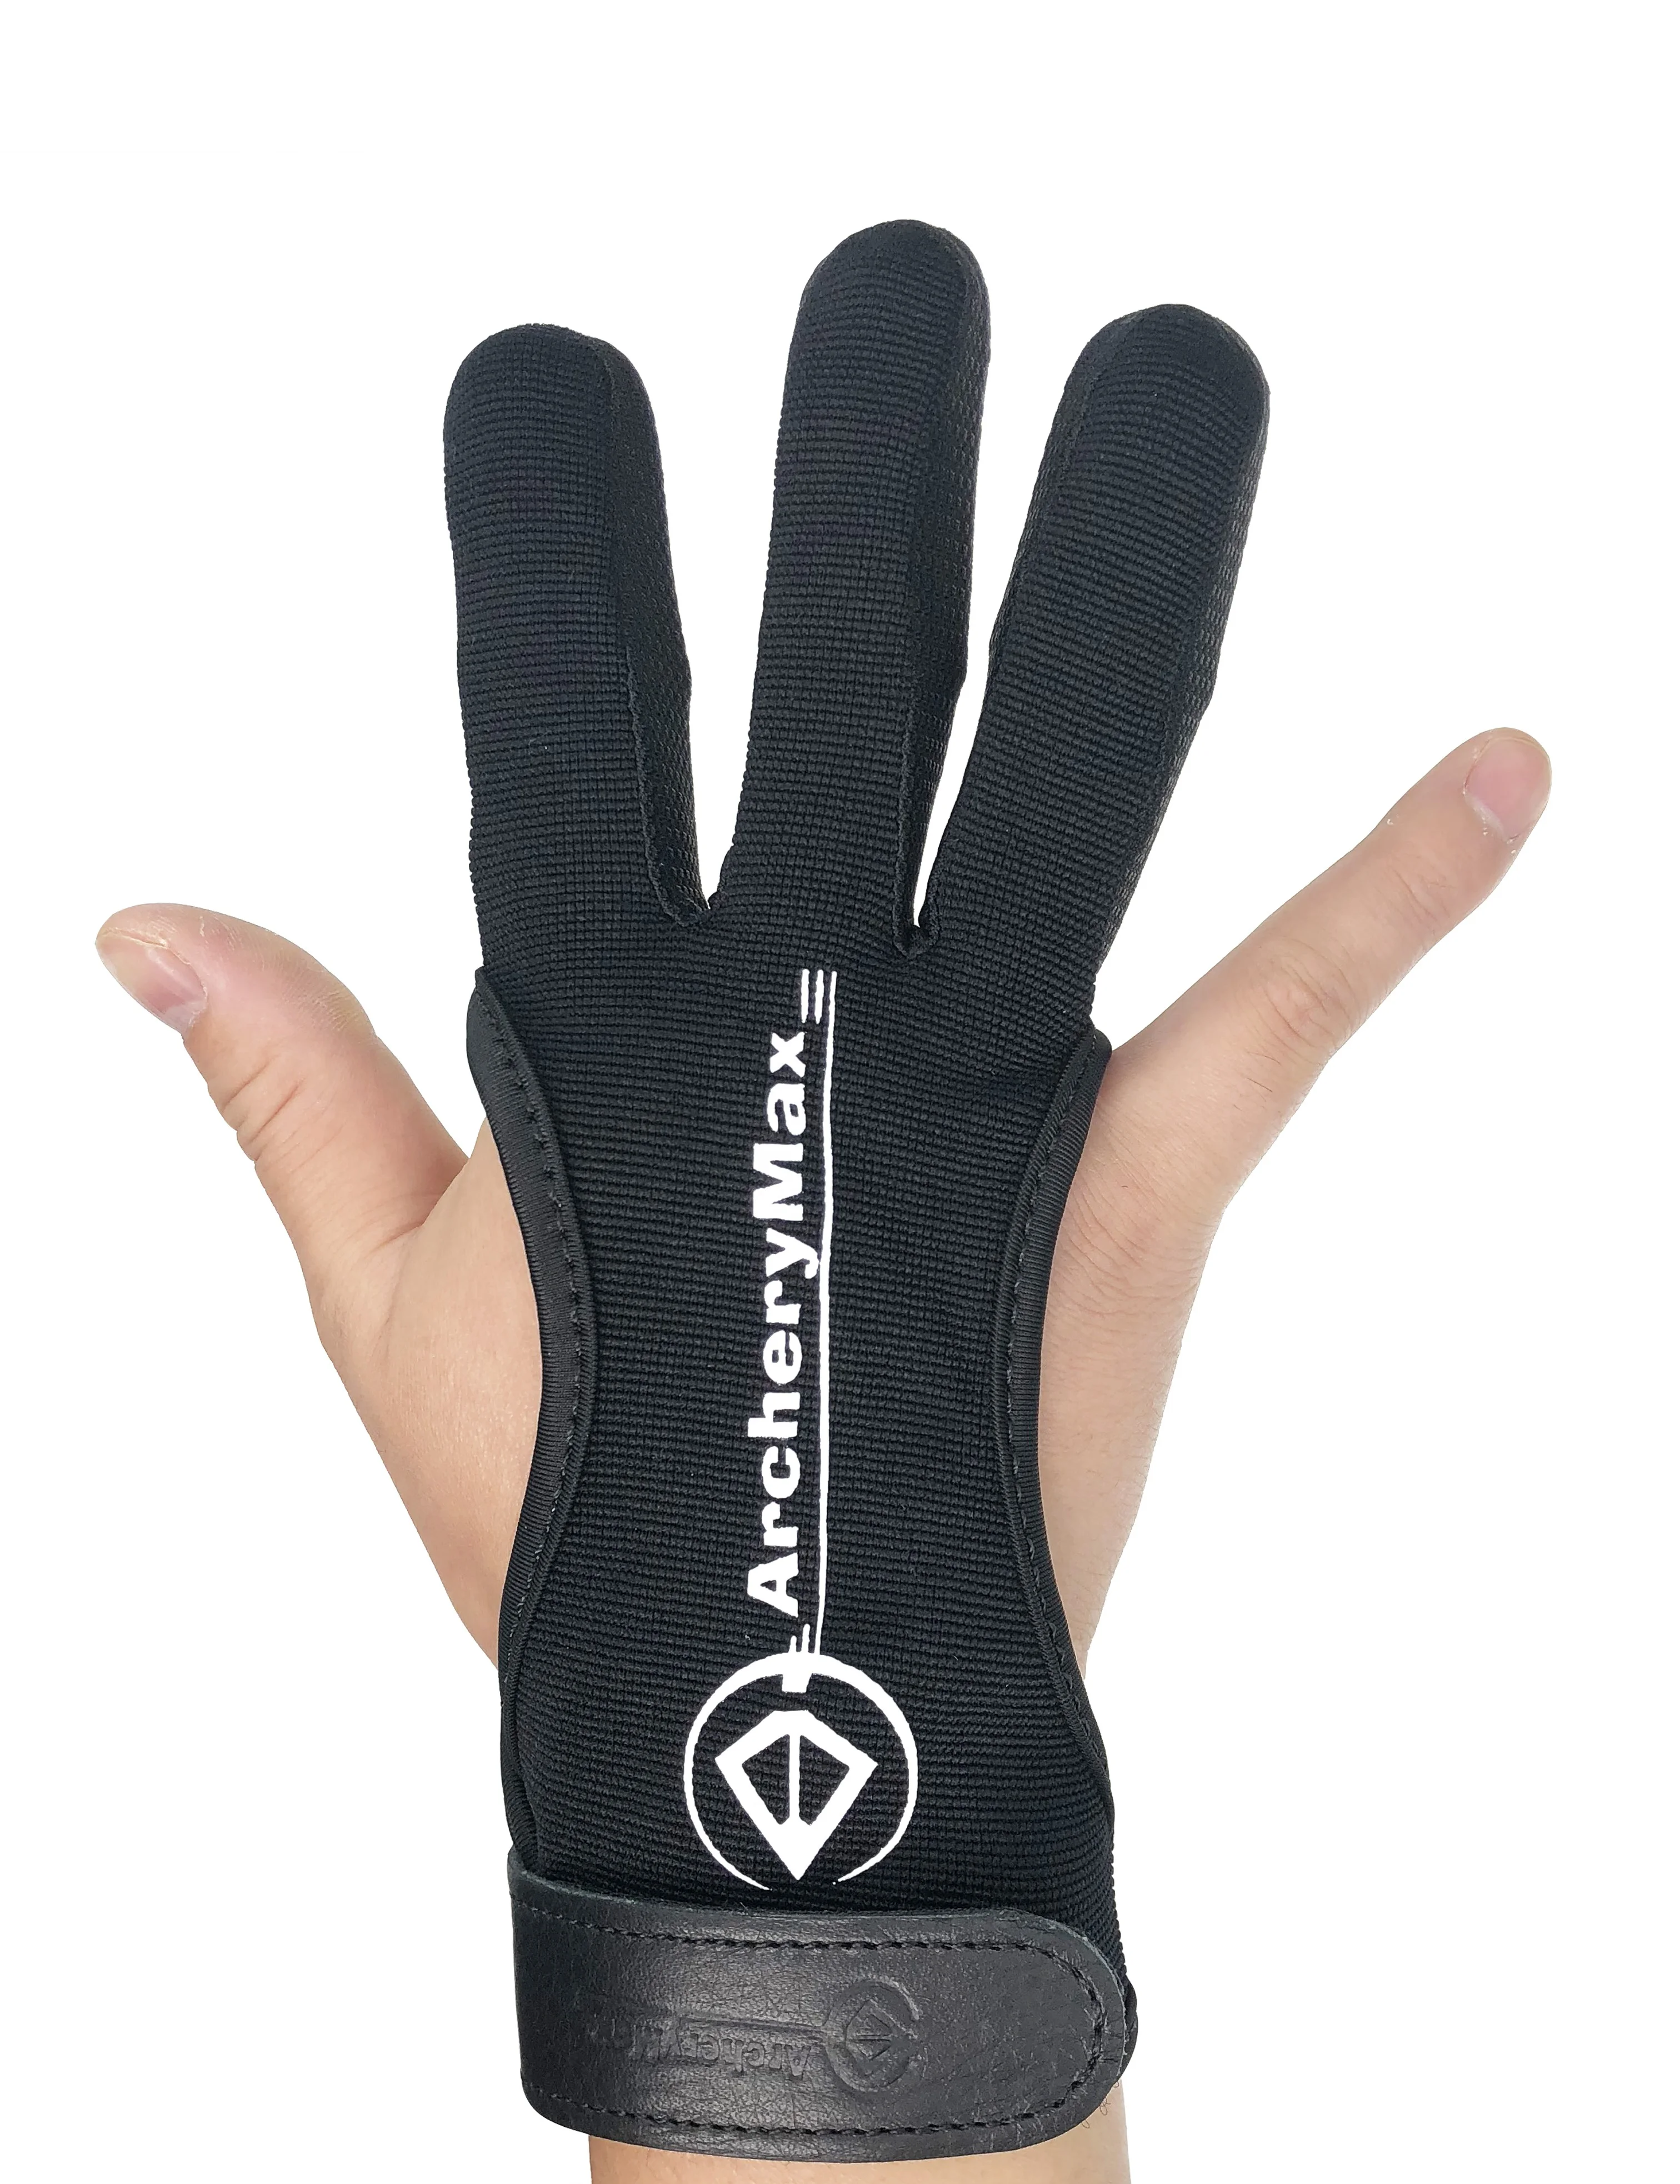 2 Arquería dedos protección ajustable guante arco equipo de protección 